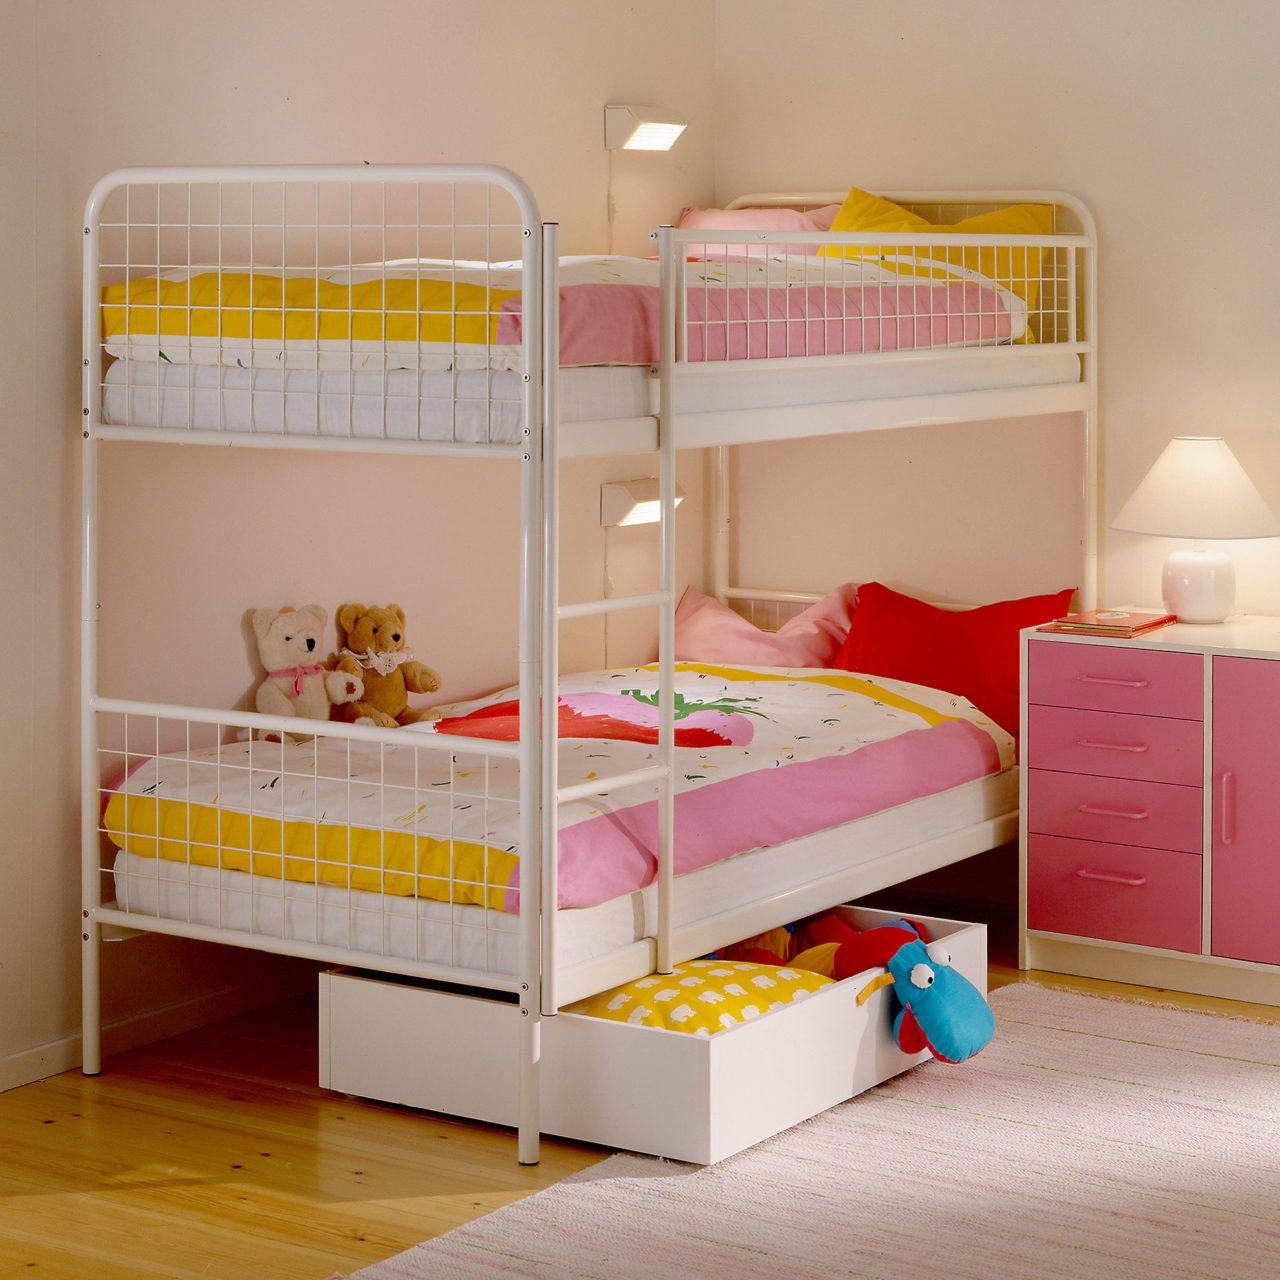 Ett barnrum där en prydligt bäddad våningssäng, modell MALM, övriga möbler samt detaljer går i rosa, gult och vitt.